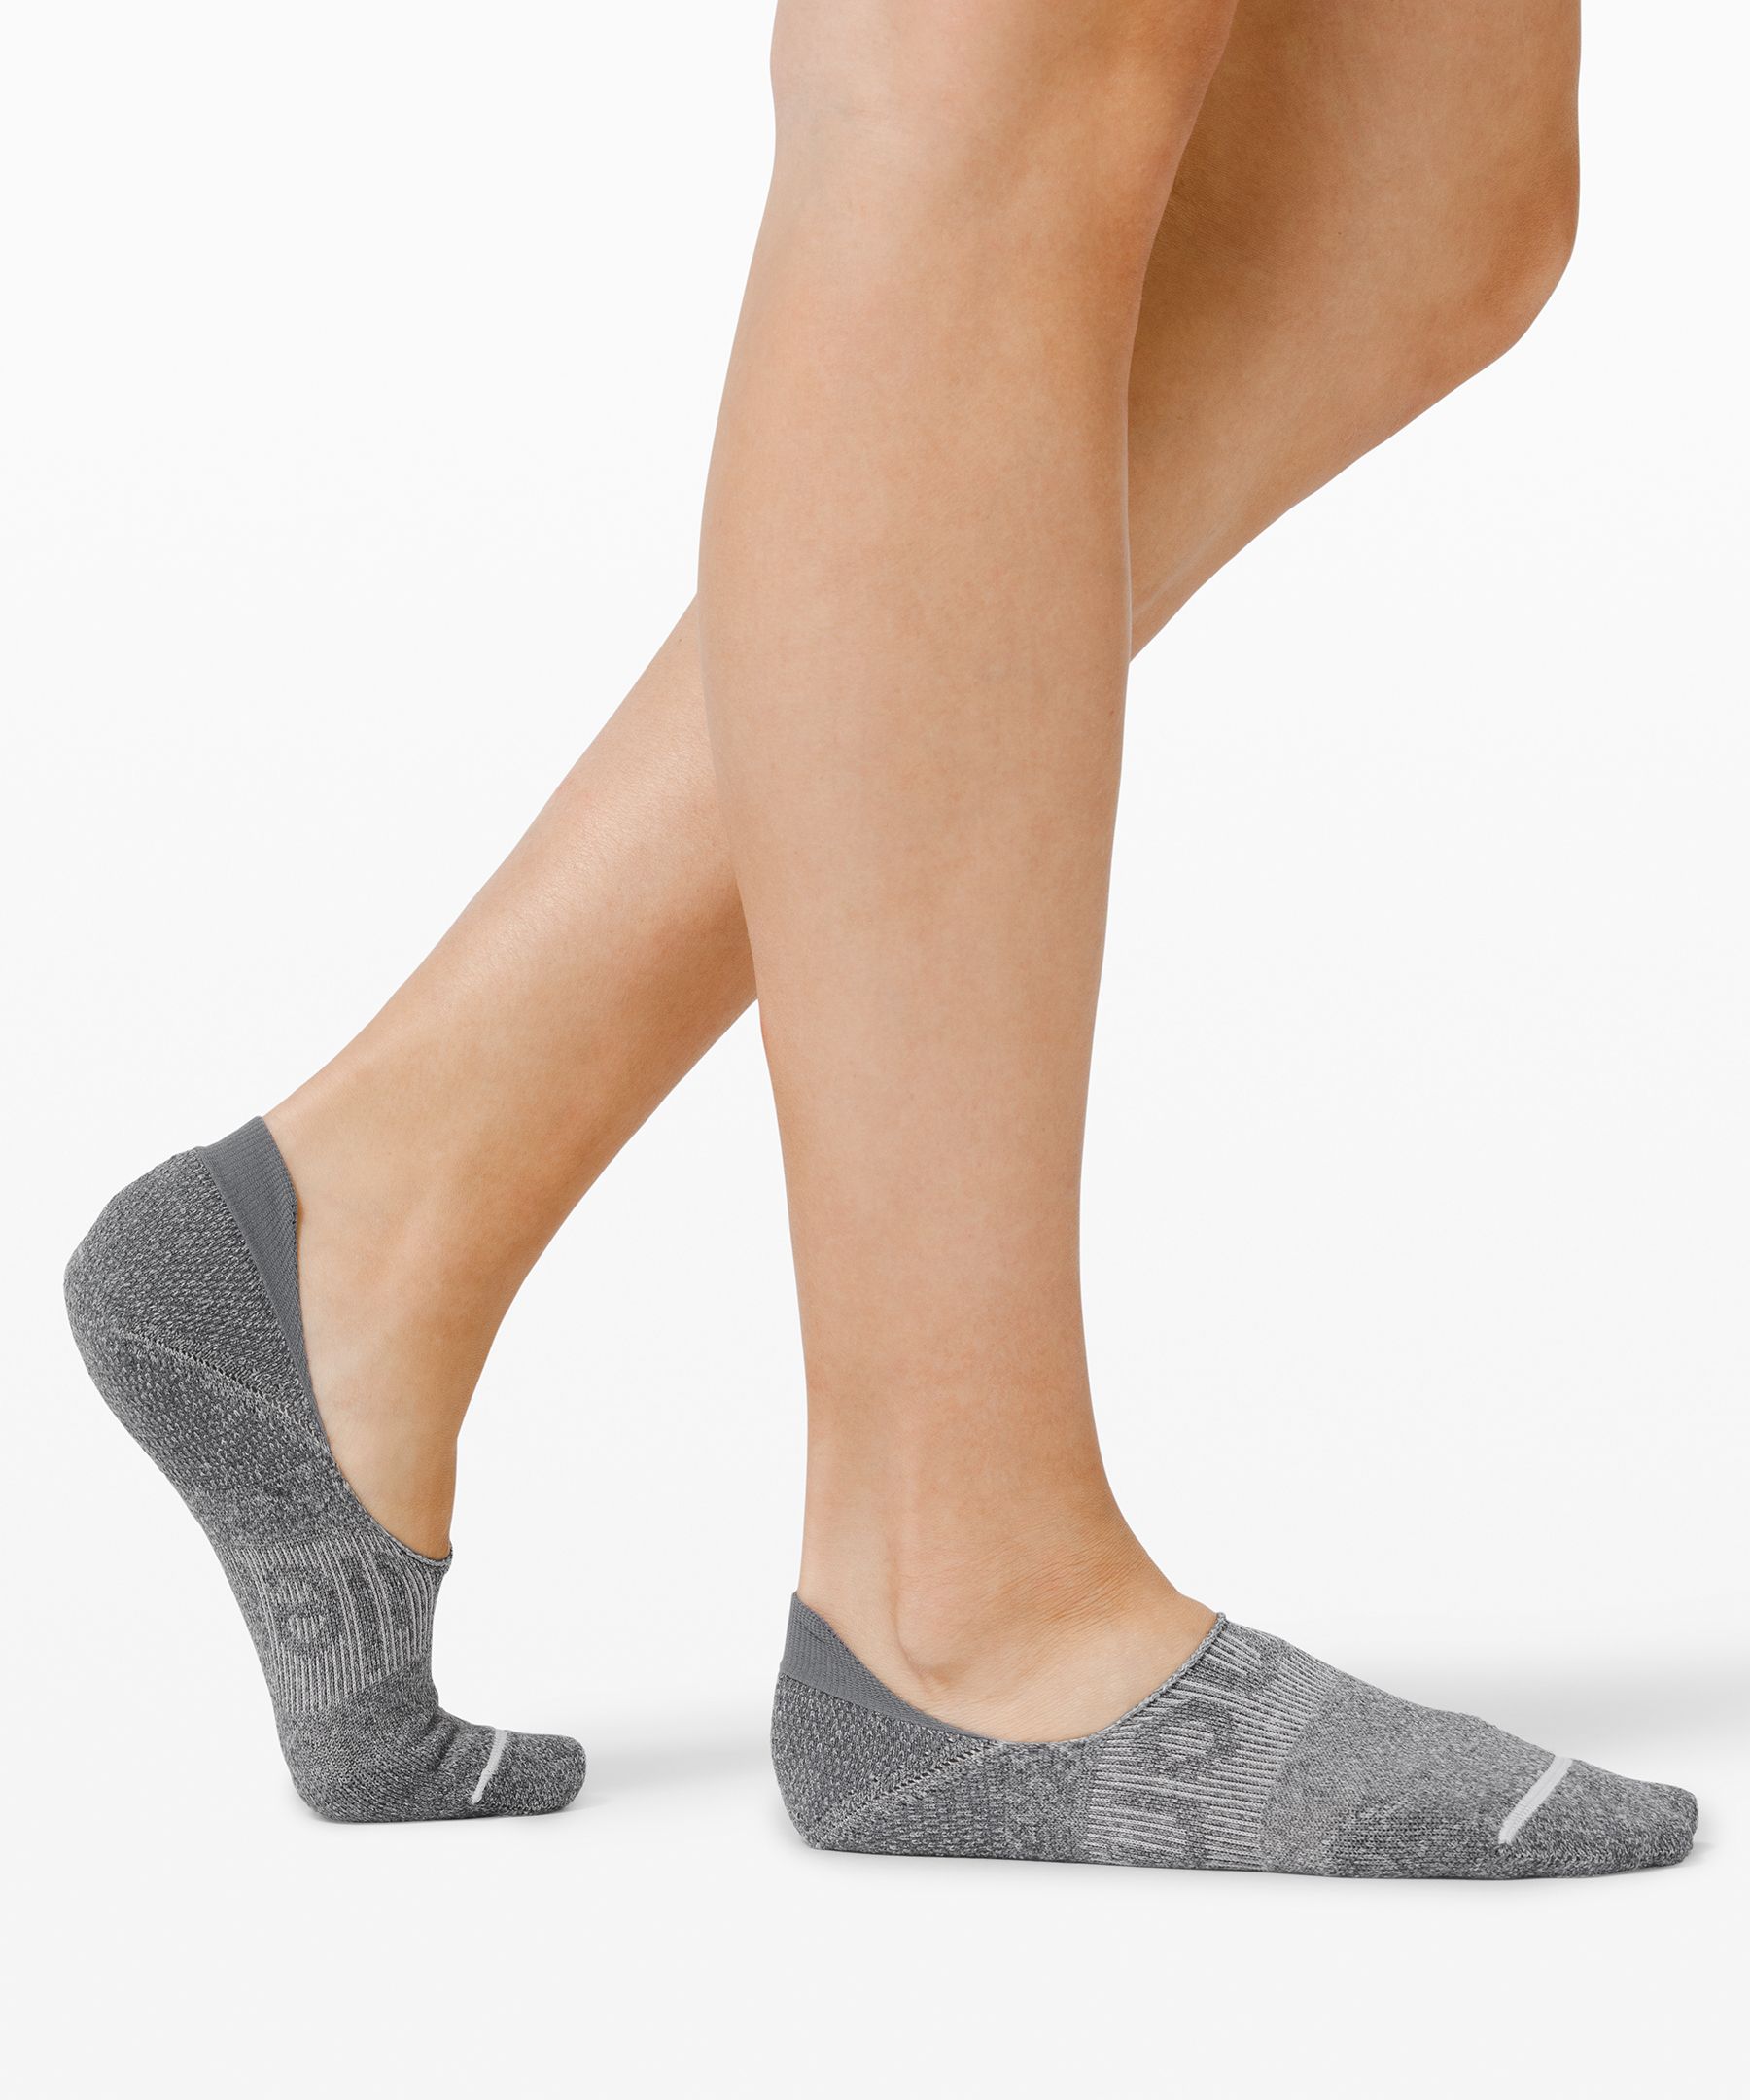 lululemon socks women